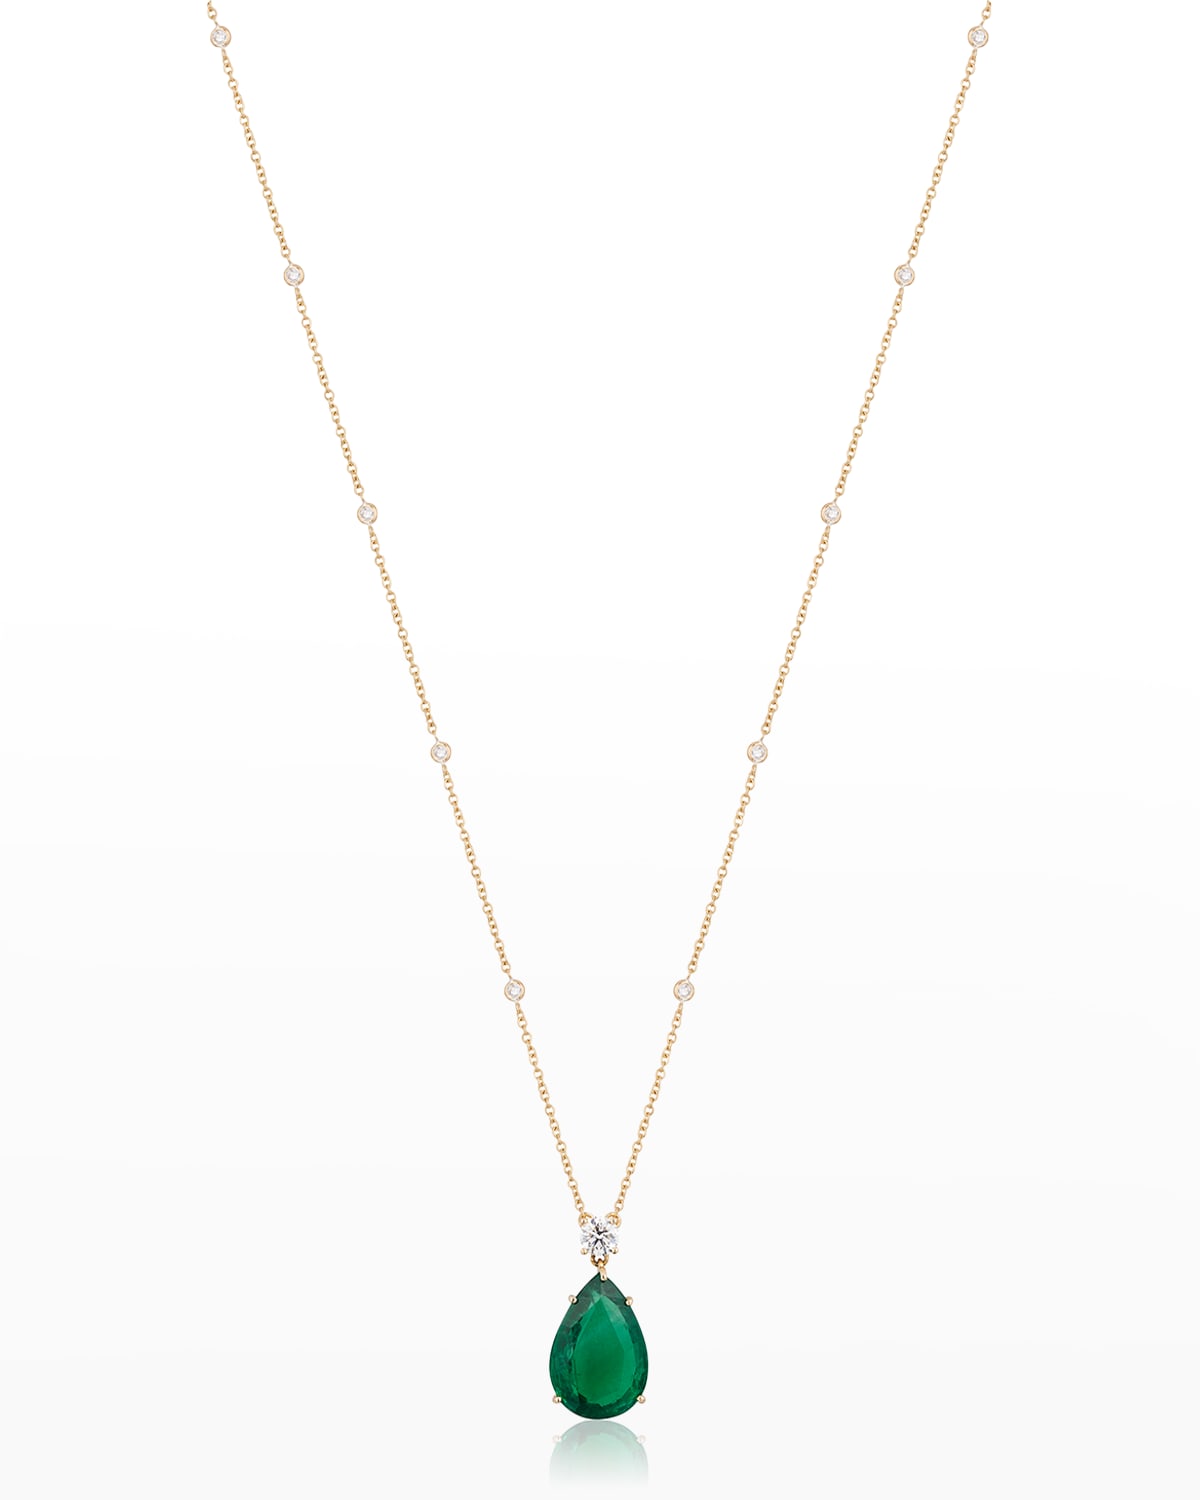 Zambian Emerald and Diamond Pendant Necklace